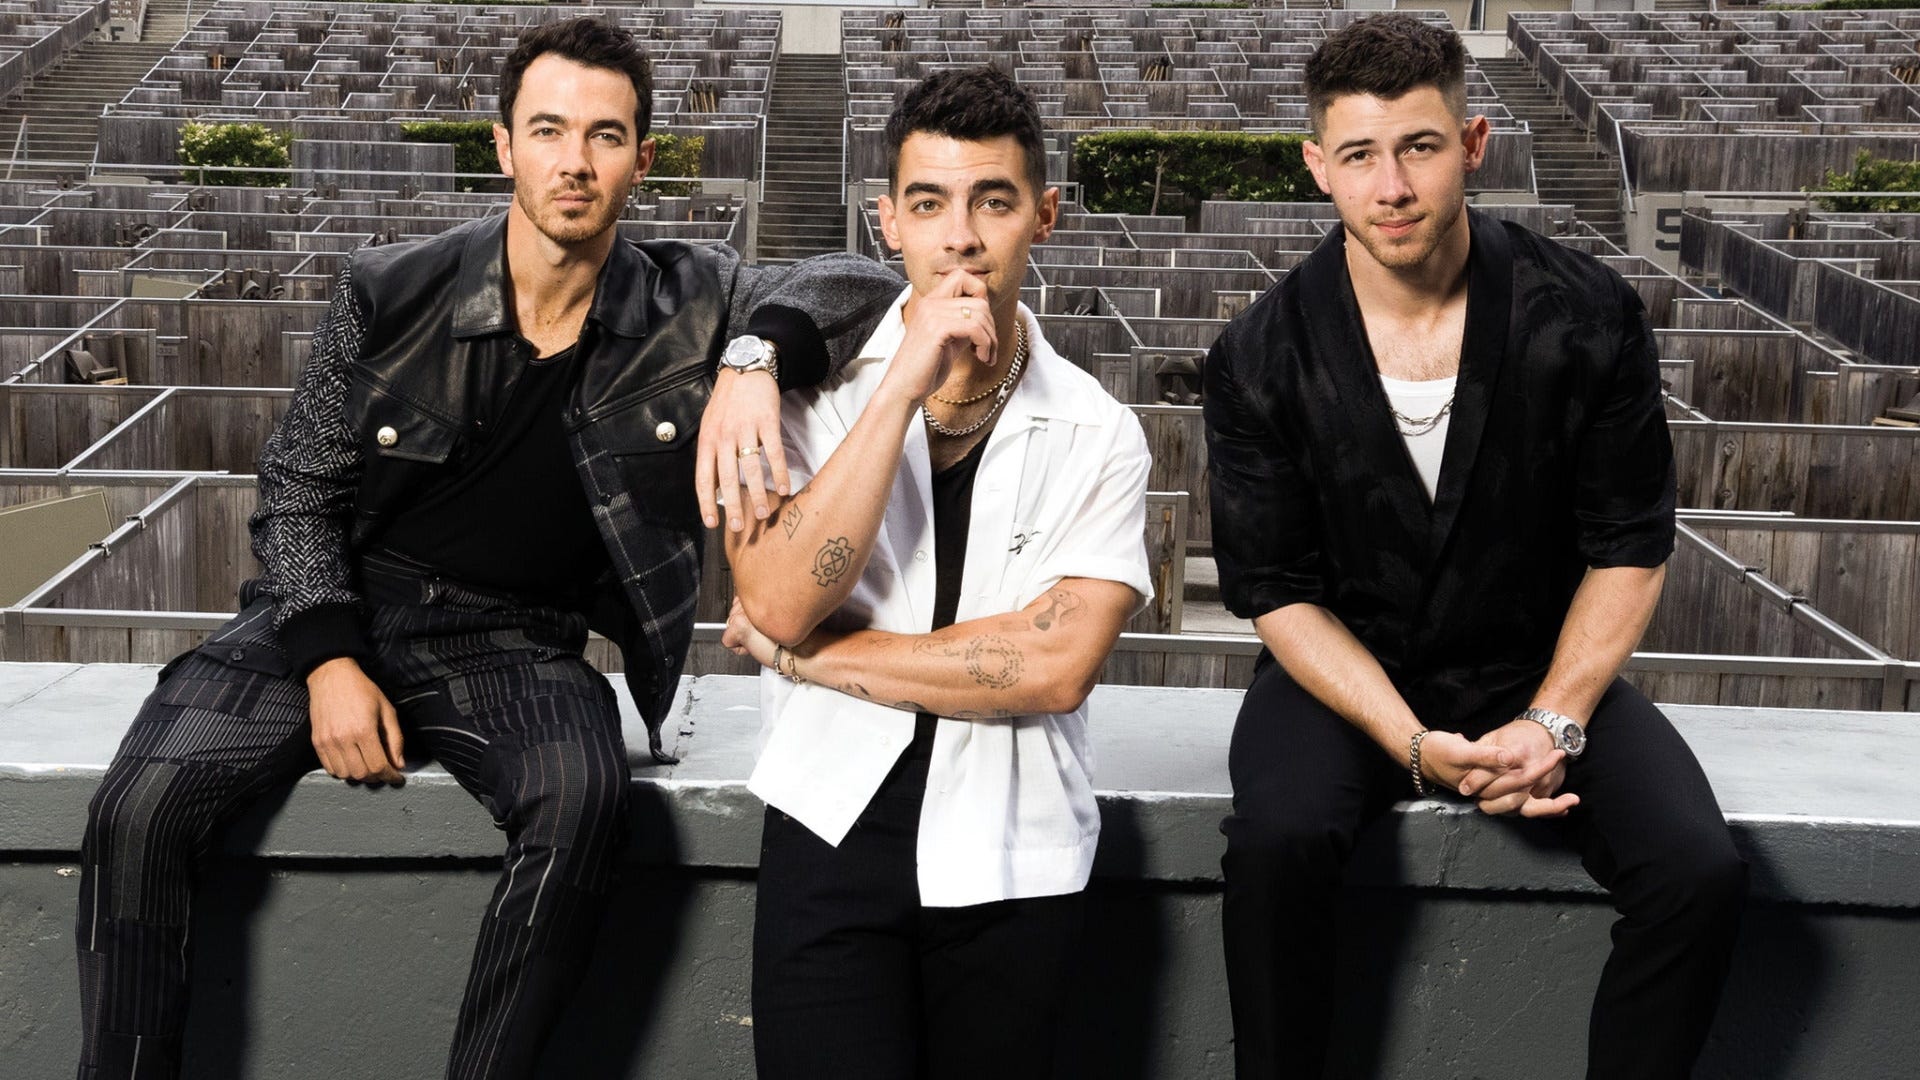 Listen to win Jonas Brothers tickets